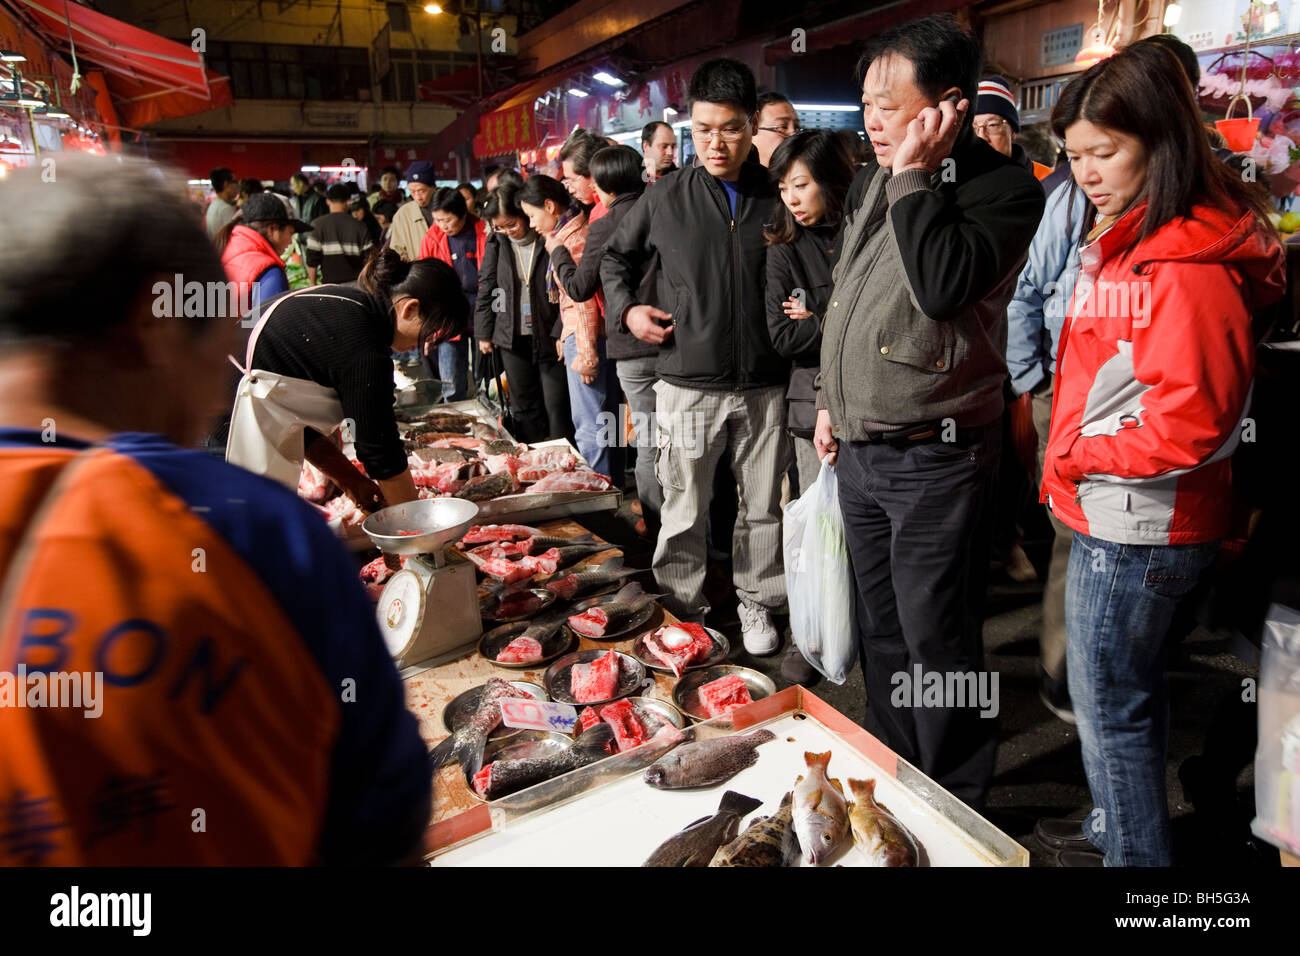 People shopping at Hong Kong's Bowrington Road wet market at night. Stock Photo